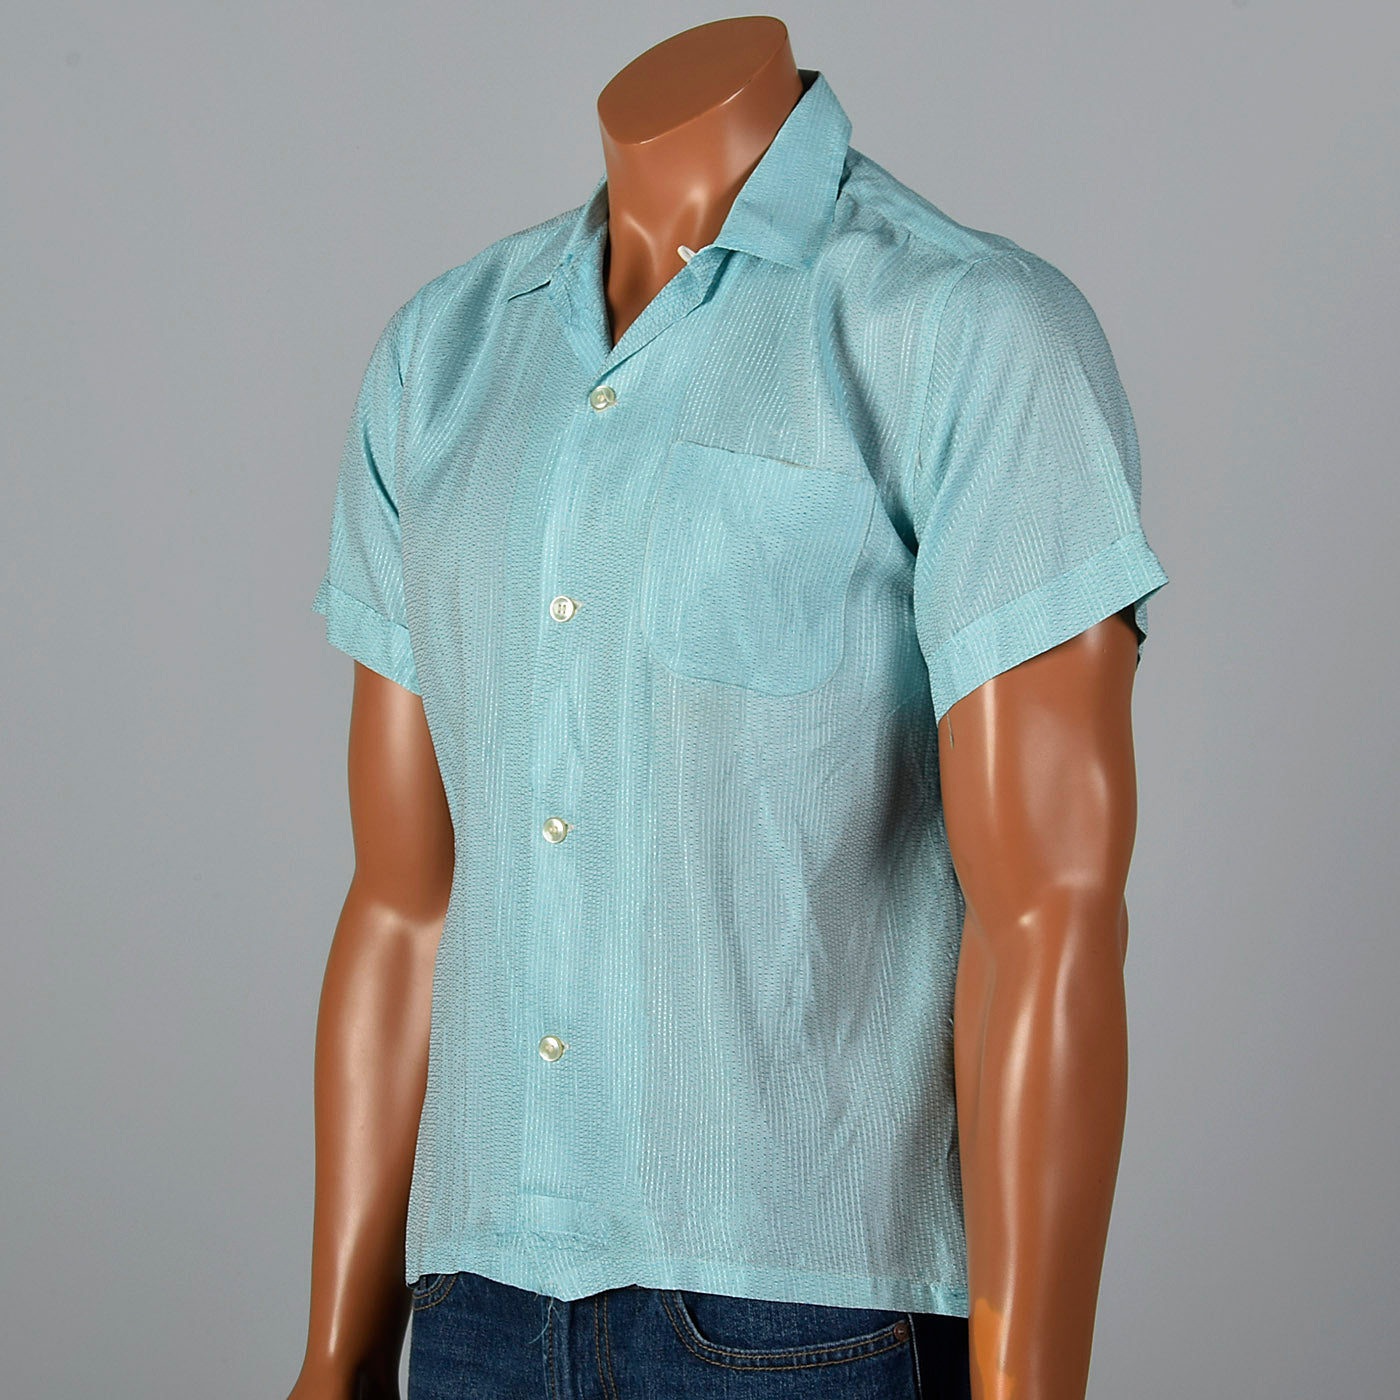 1950s Mens Light Blue Rayon Shirt